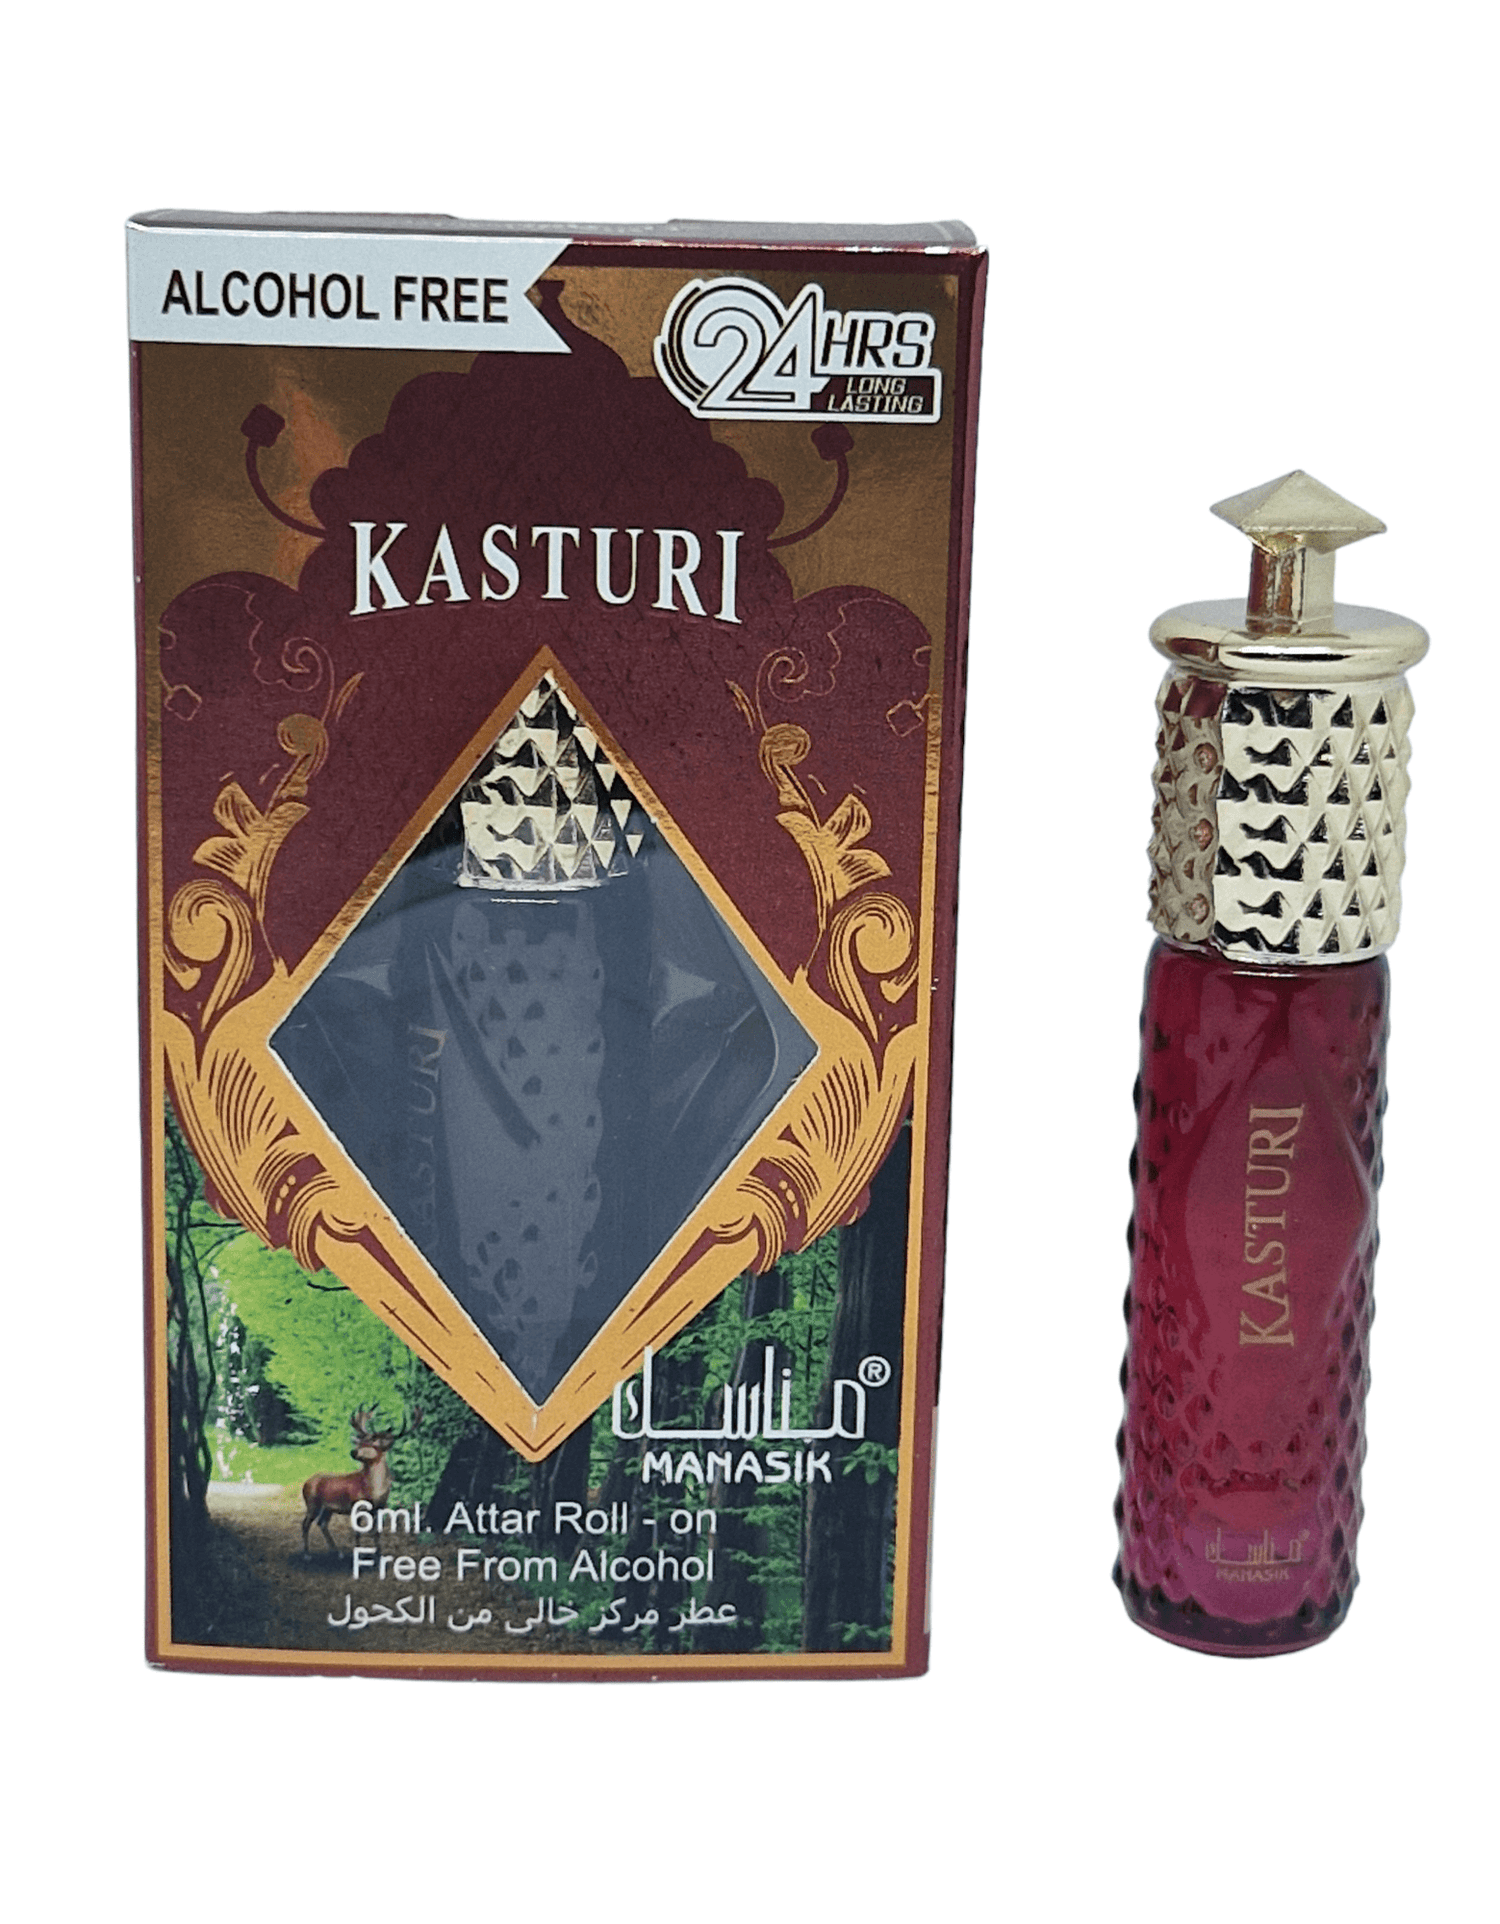 Kasturi - 6ml roll on - Manasik - Alcohol Free